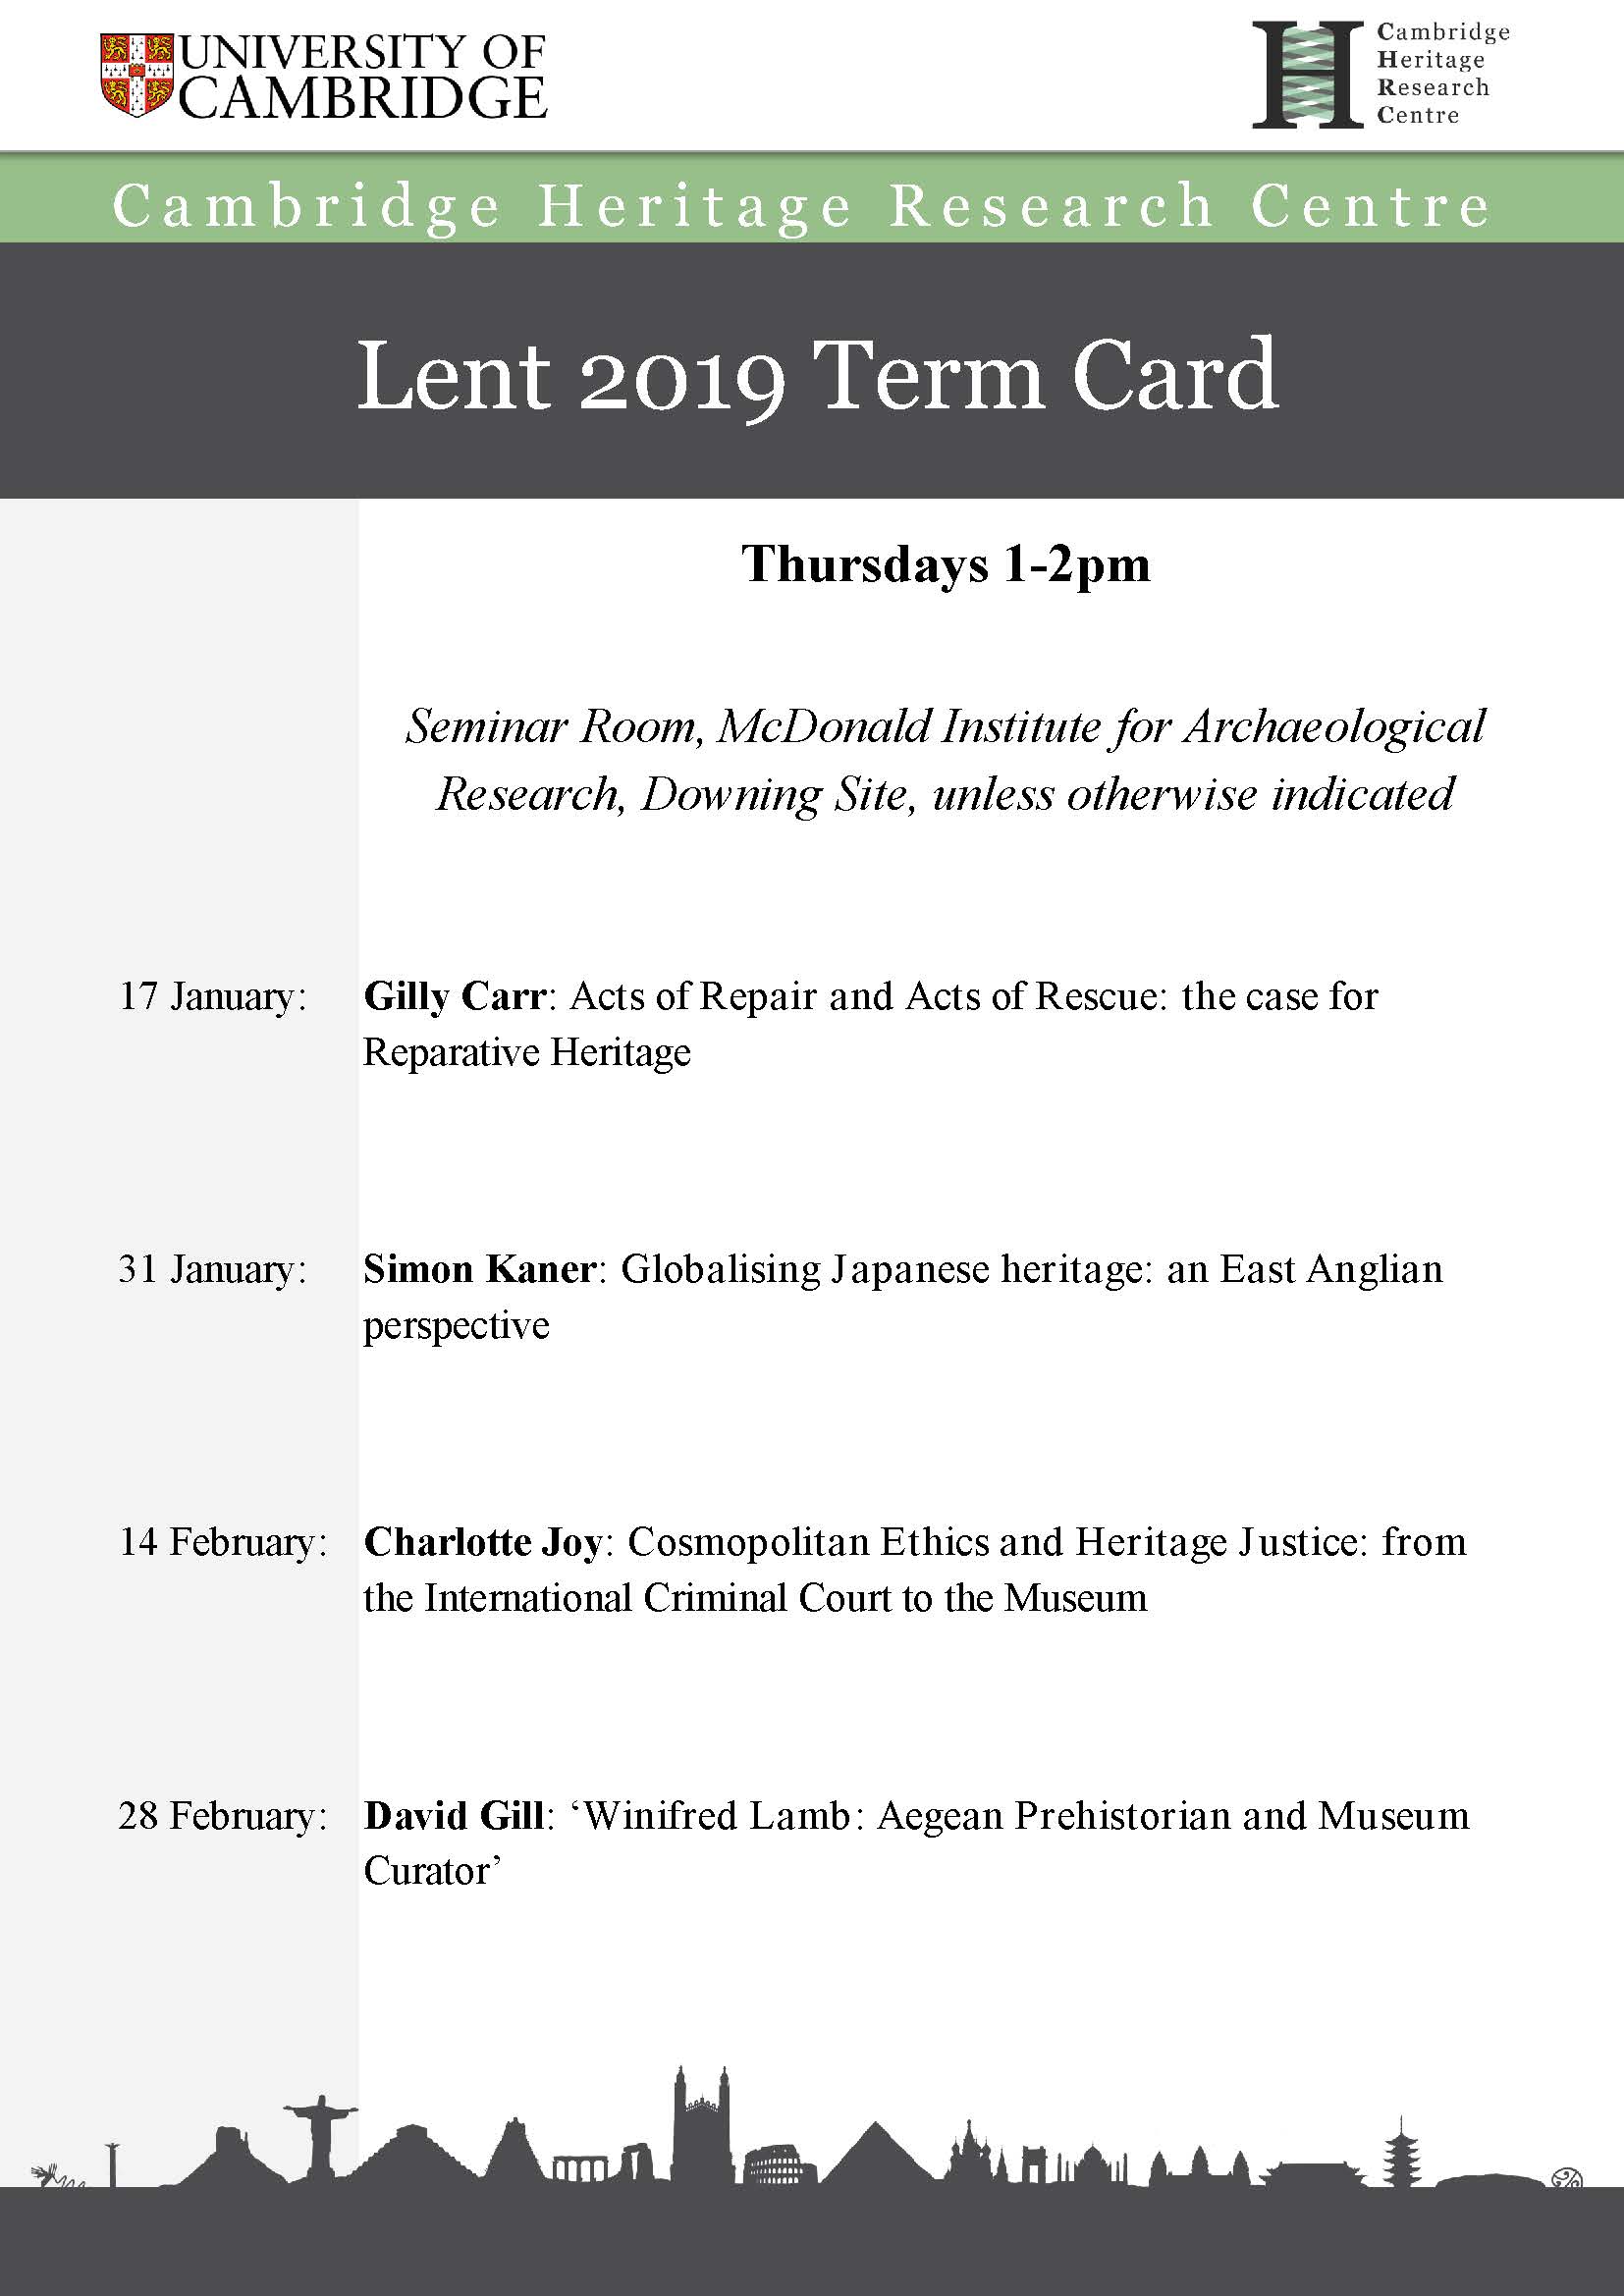 Lent Term Card 2019